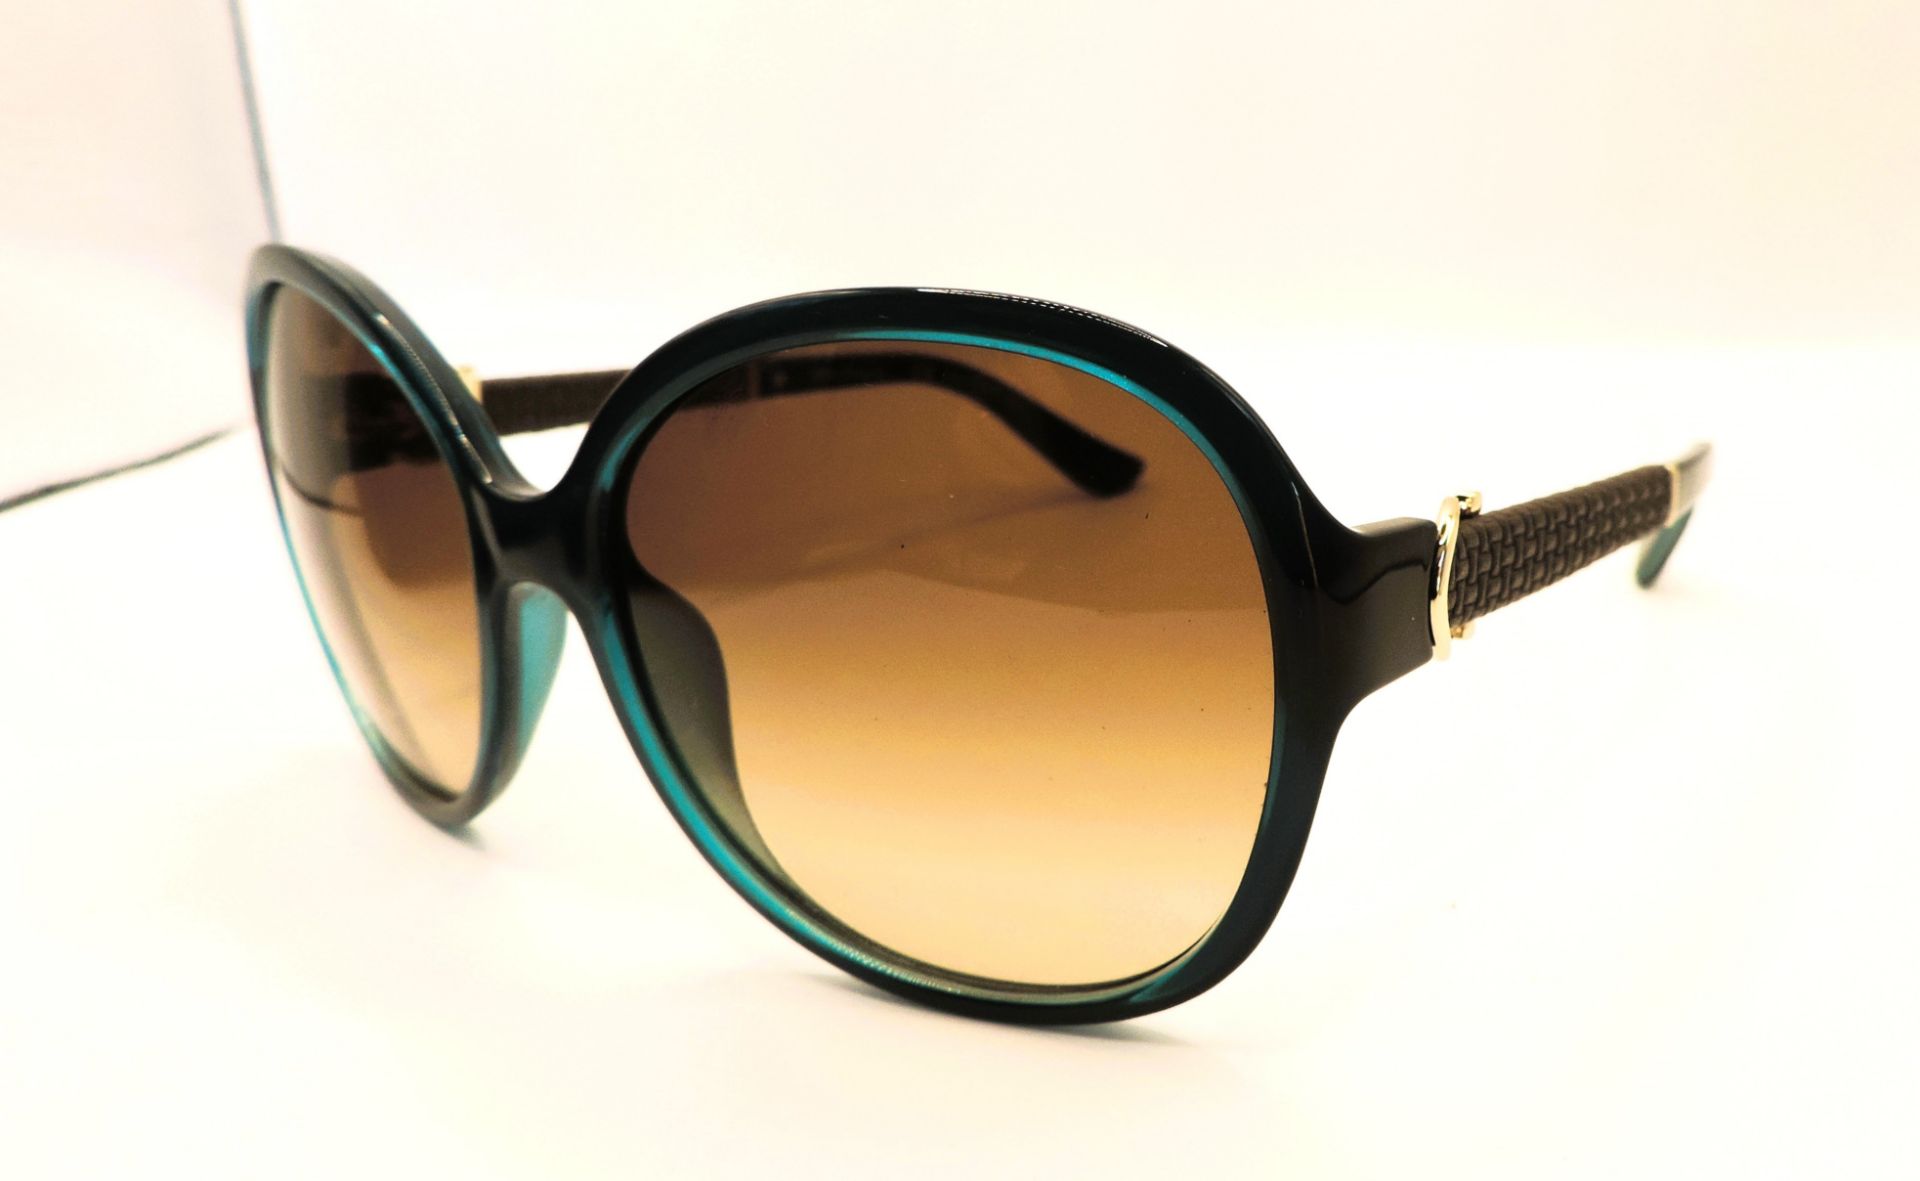 Salvatore Ferragamo Sunglasses SF764SL New With Case - Image 3 of 9